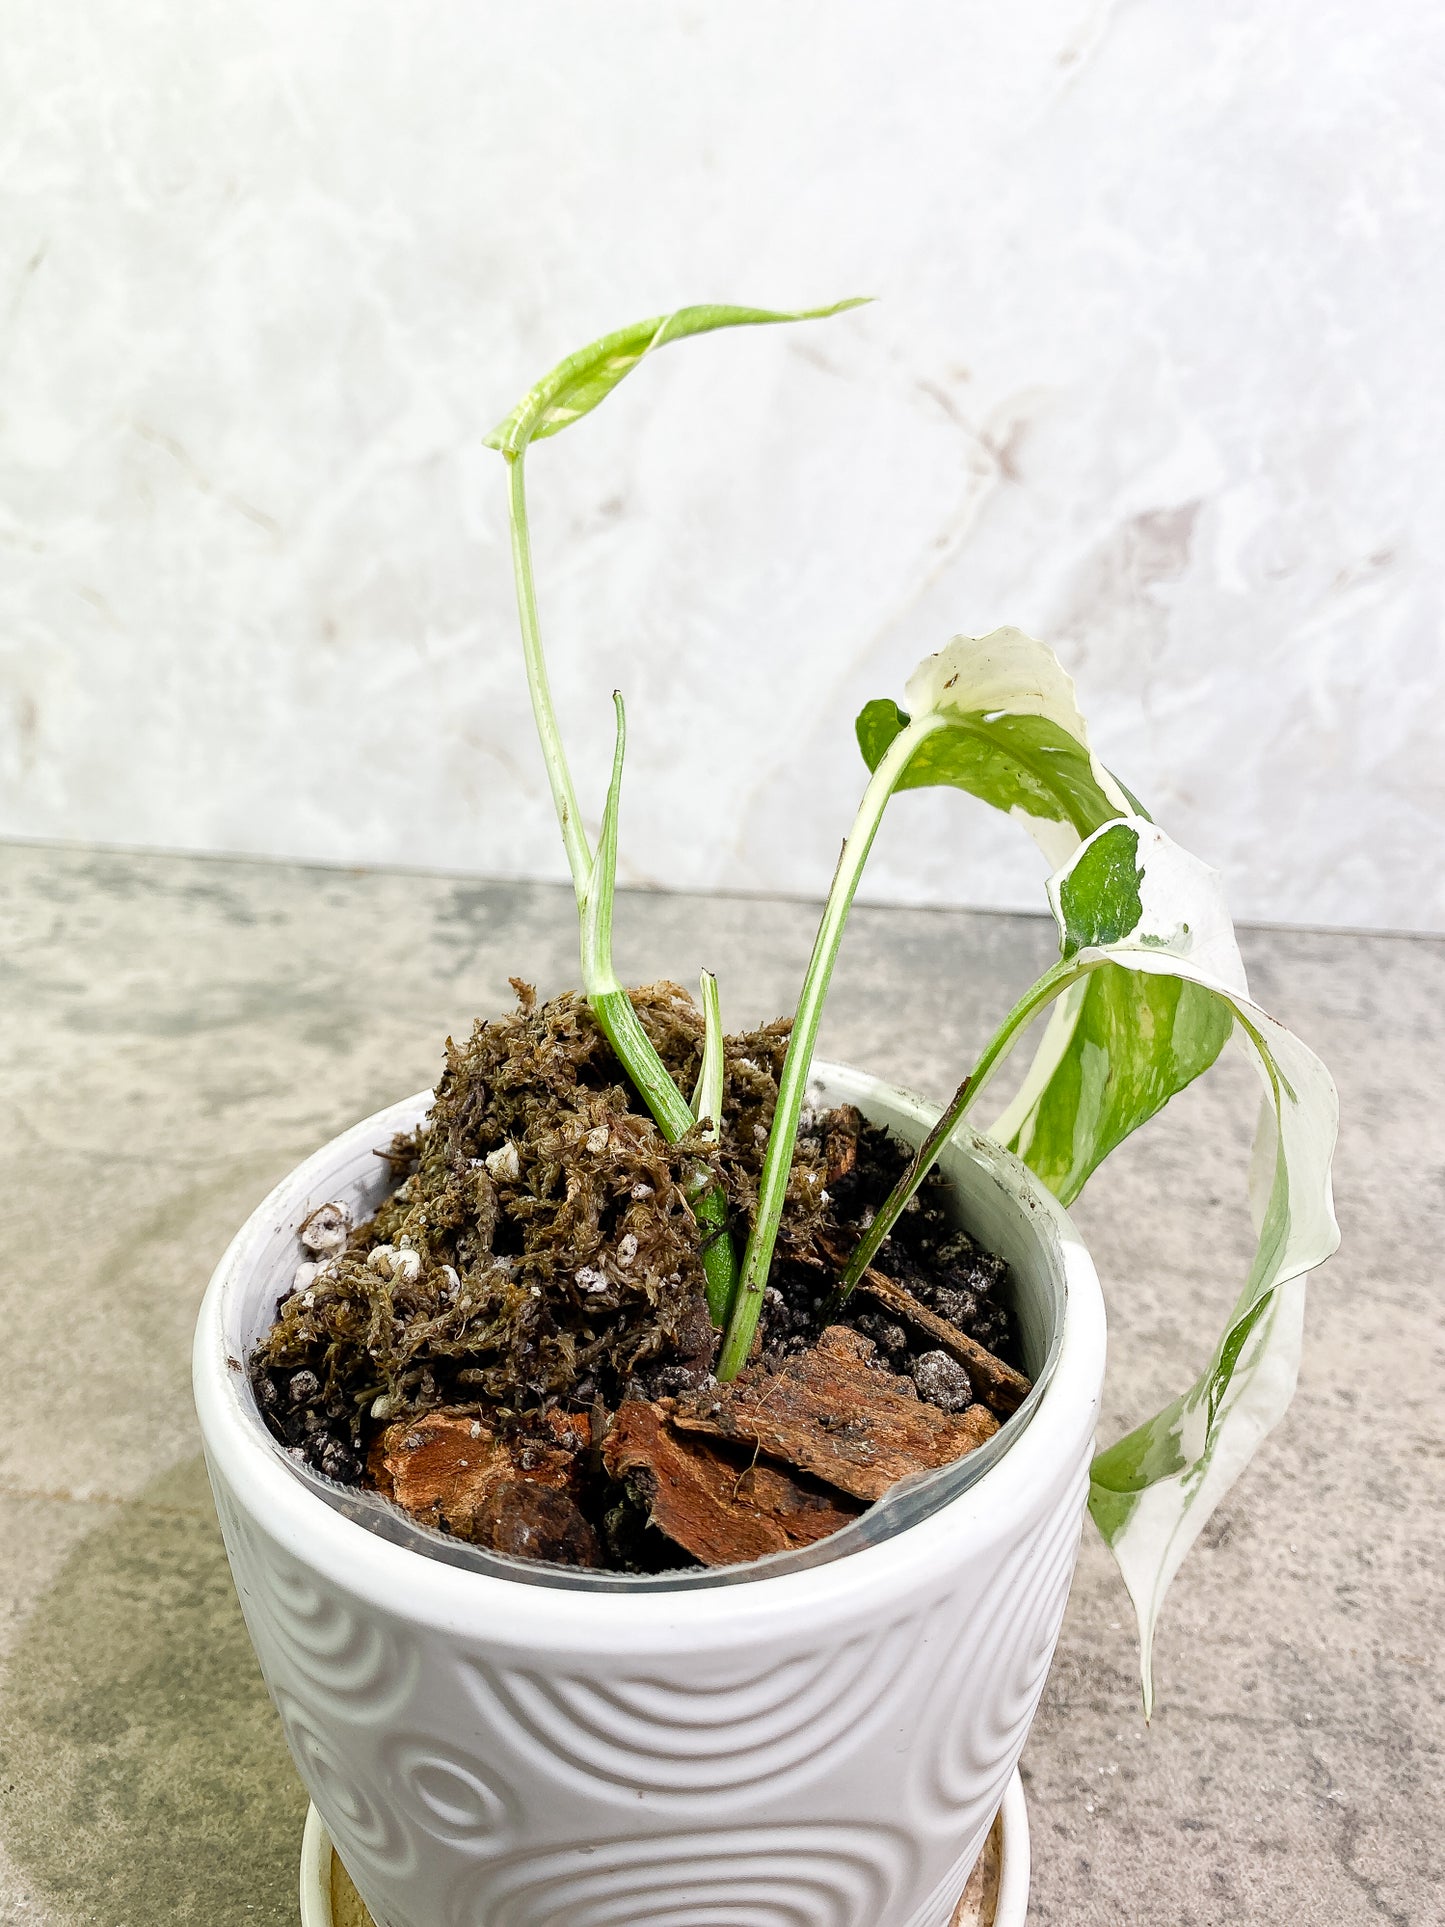 Epipremnum Pinnatum Variegated 2 leaves 1 unfurling fully rooted